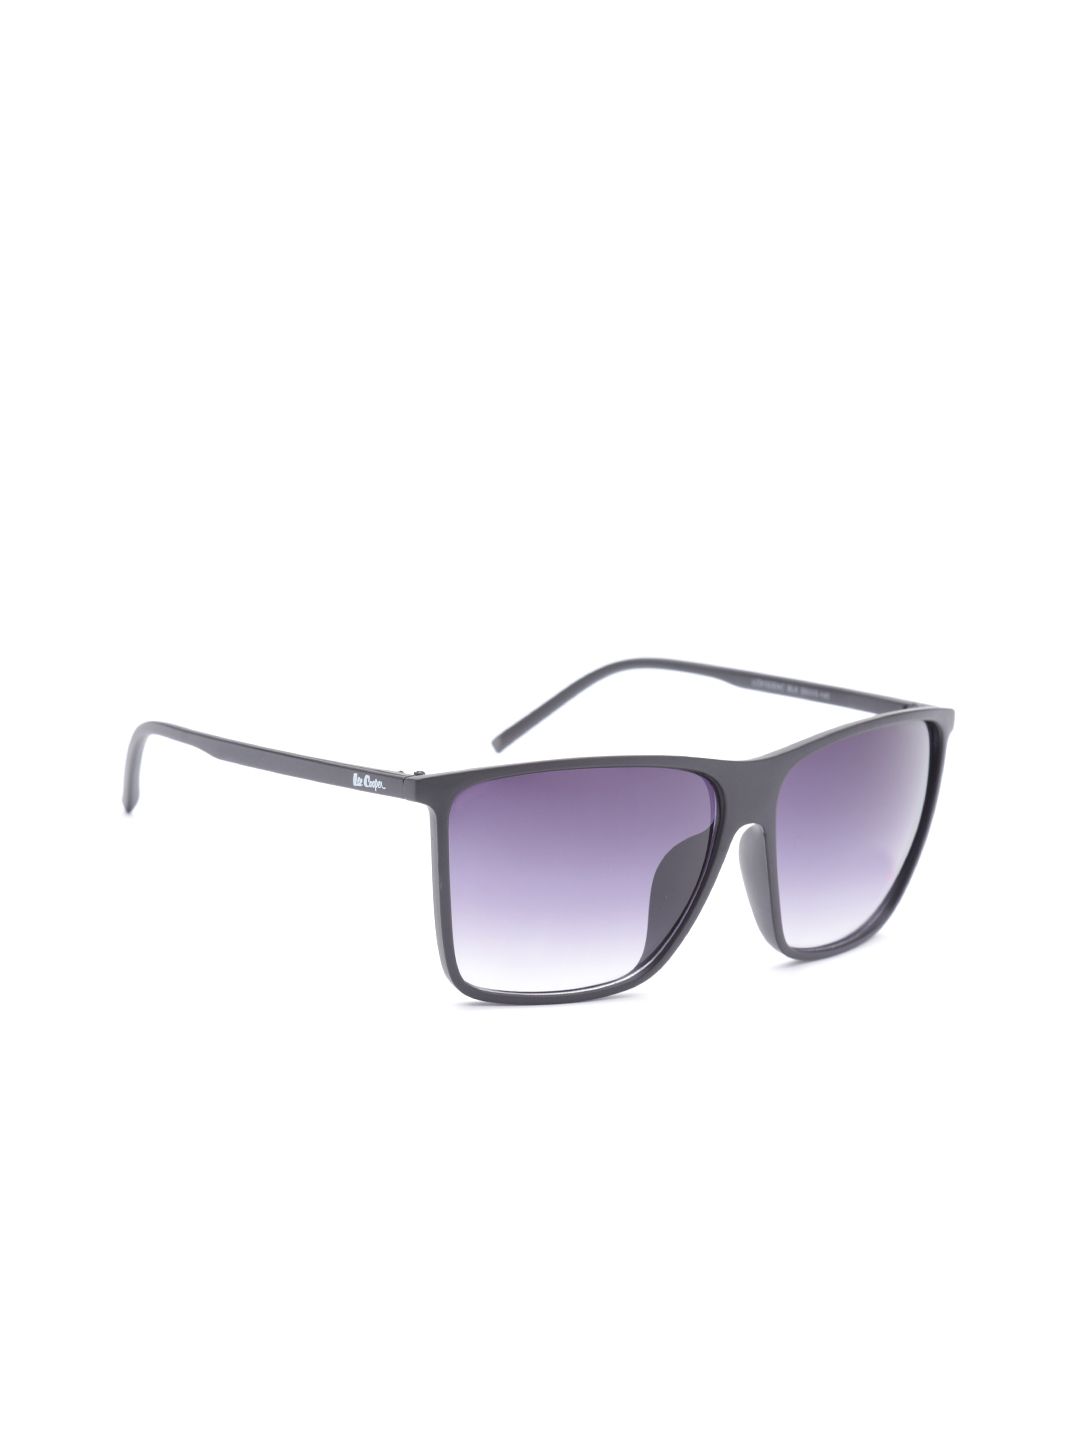 Lee Cooper Unisex Square Sunglasses LC9152ENC Price in India